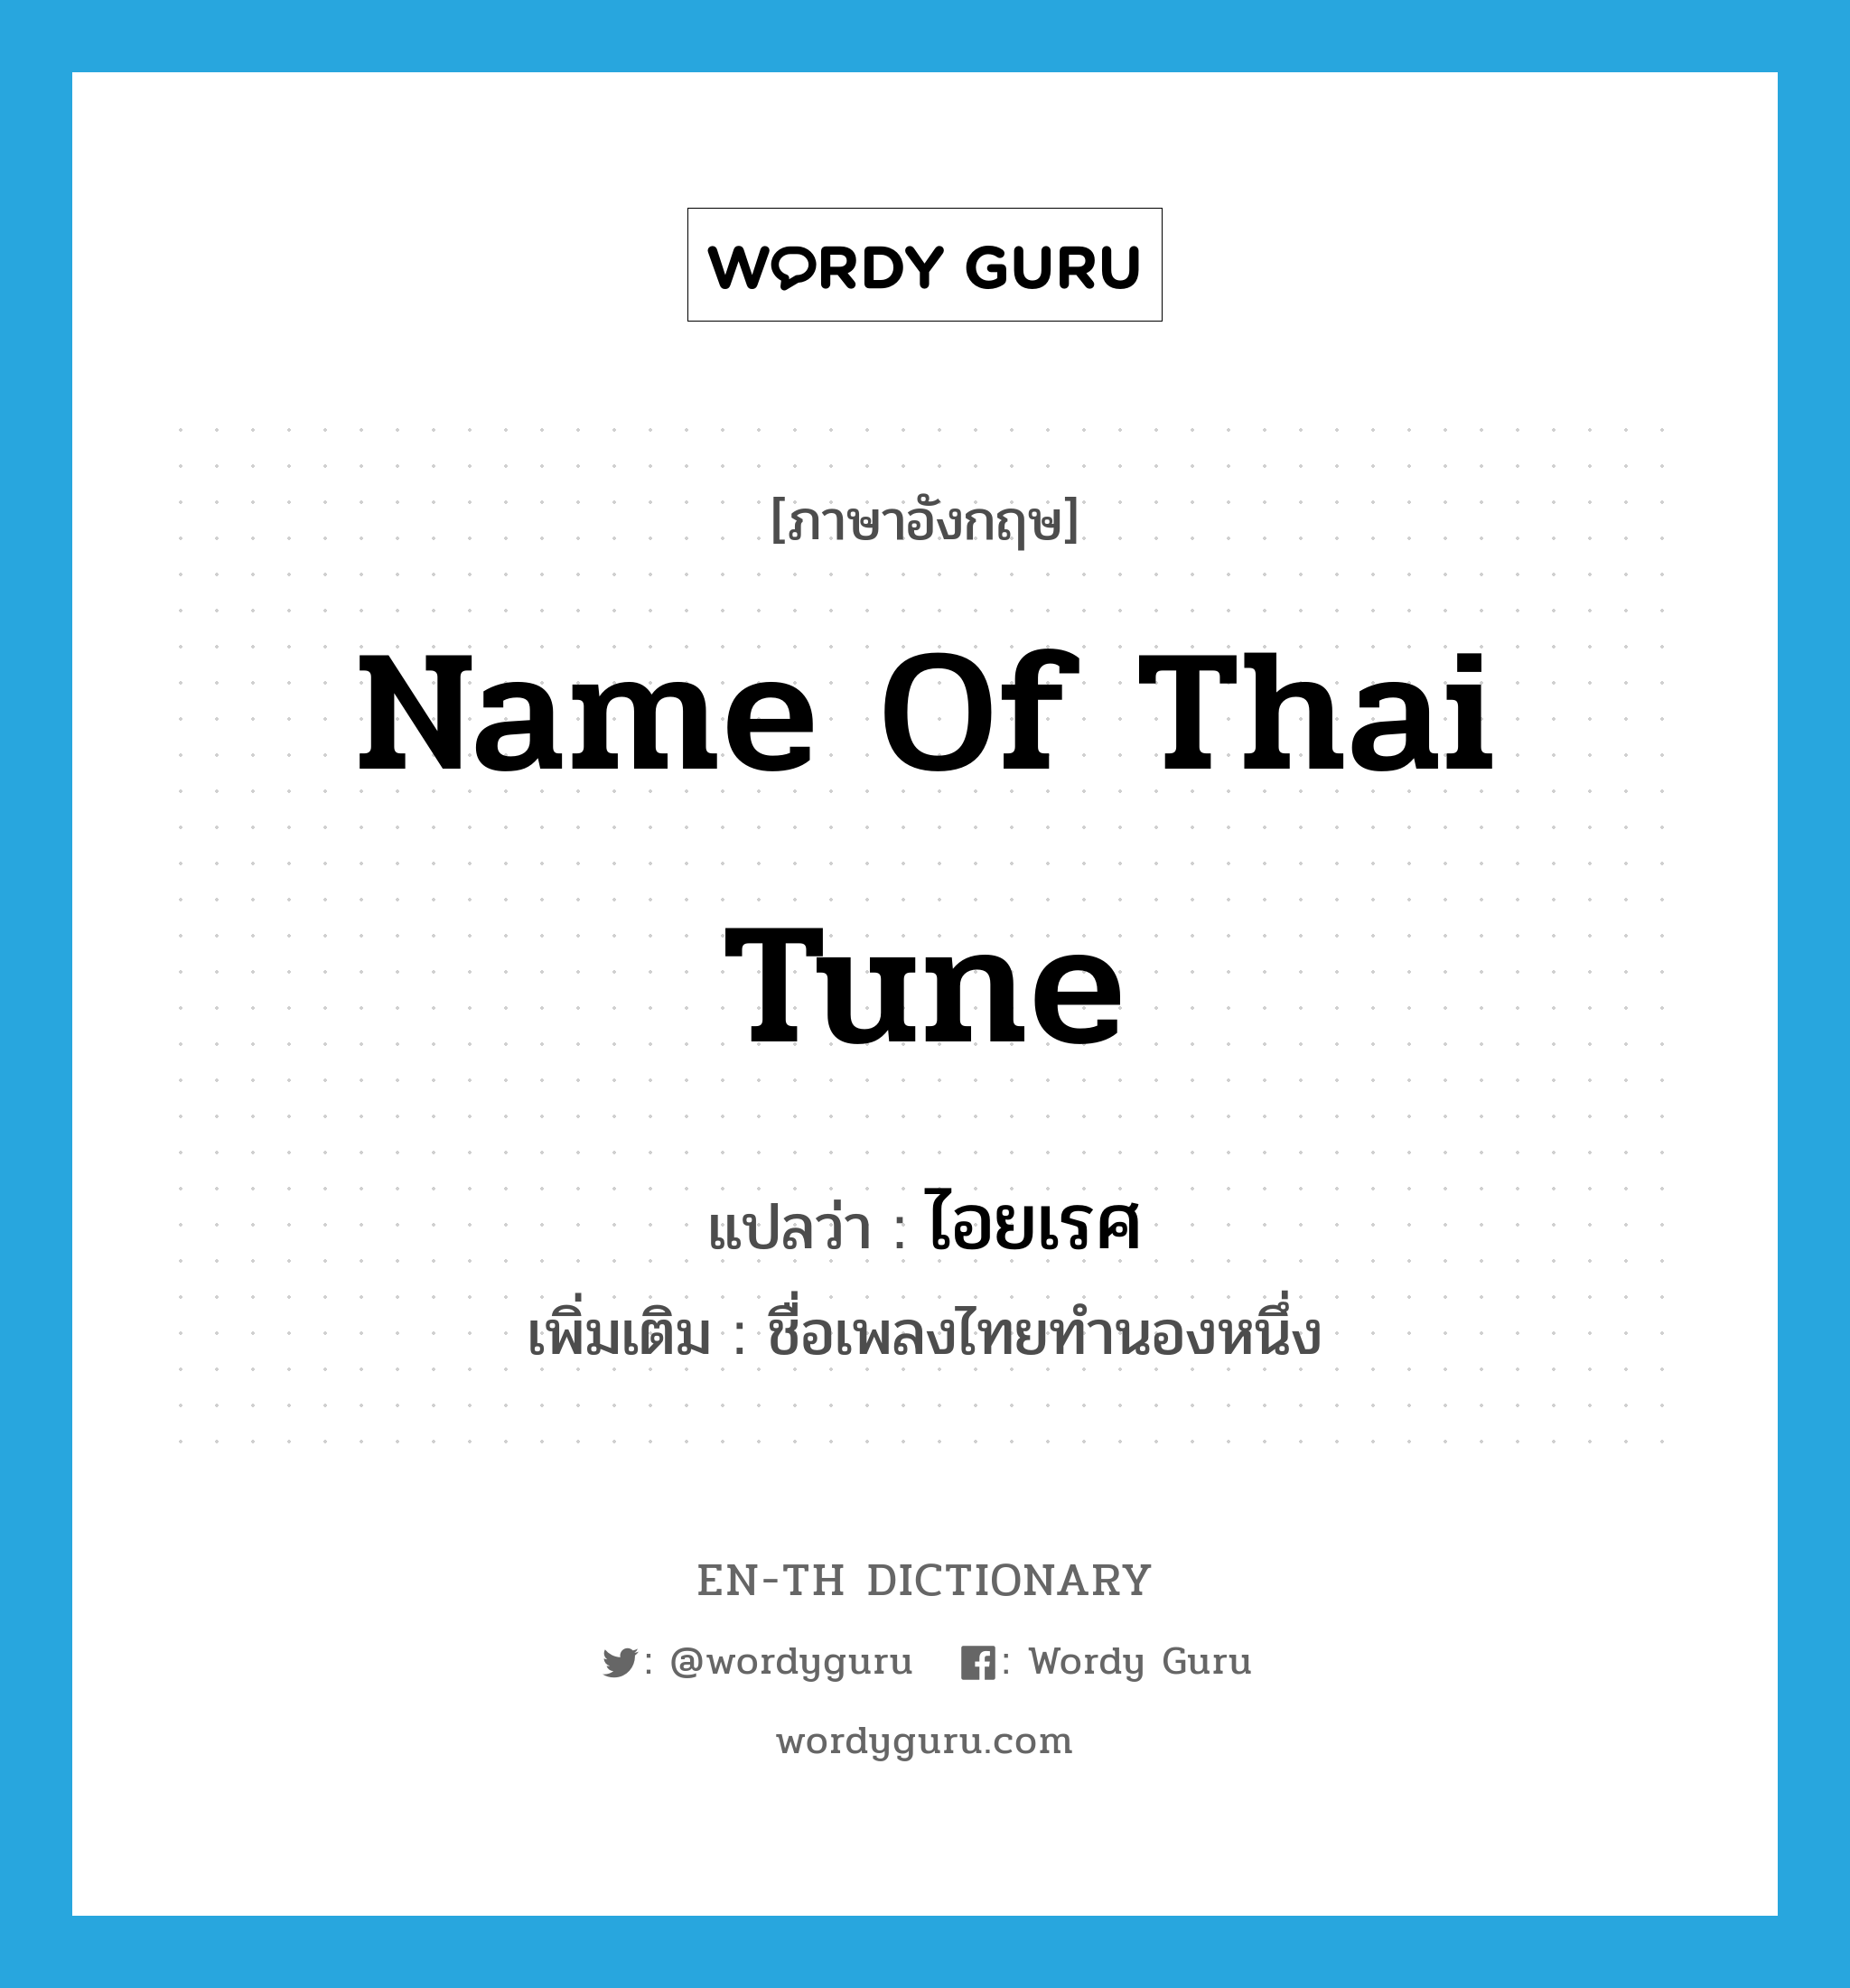 name of Thai tune แปลว่า?, คำศัพท์ภาษาอังกฤษ name of Thai tune แปลว่า ไอยเรศ ประเภท N เพิ่มเติม ชื่อเพลงไทยทำนองหนึ่ง หมวด N